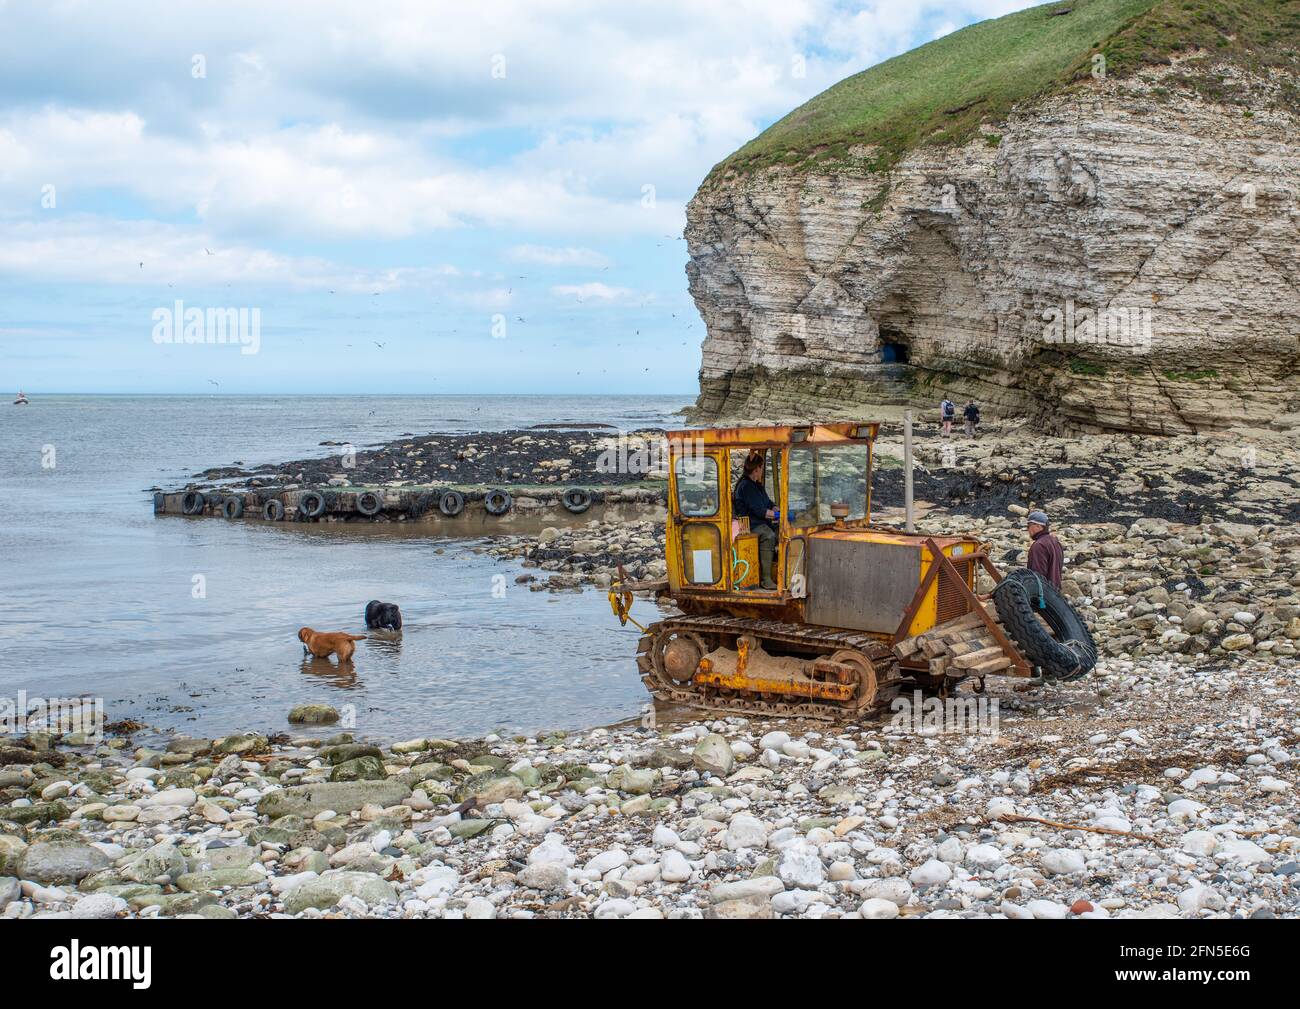 Flamborough, East Yorkshire, Royaume-Uni, 12 mai 2021 - UN tracteur à chenilles jaune sur une plage de galets à moitié dans l'eau avec deux chiens en mer Banque D'Images